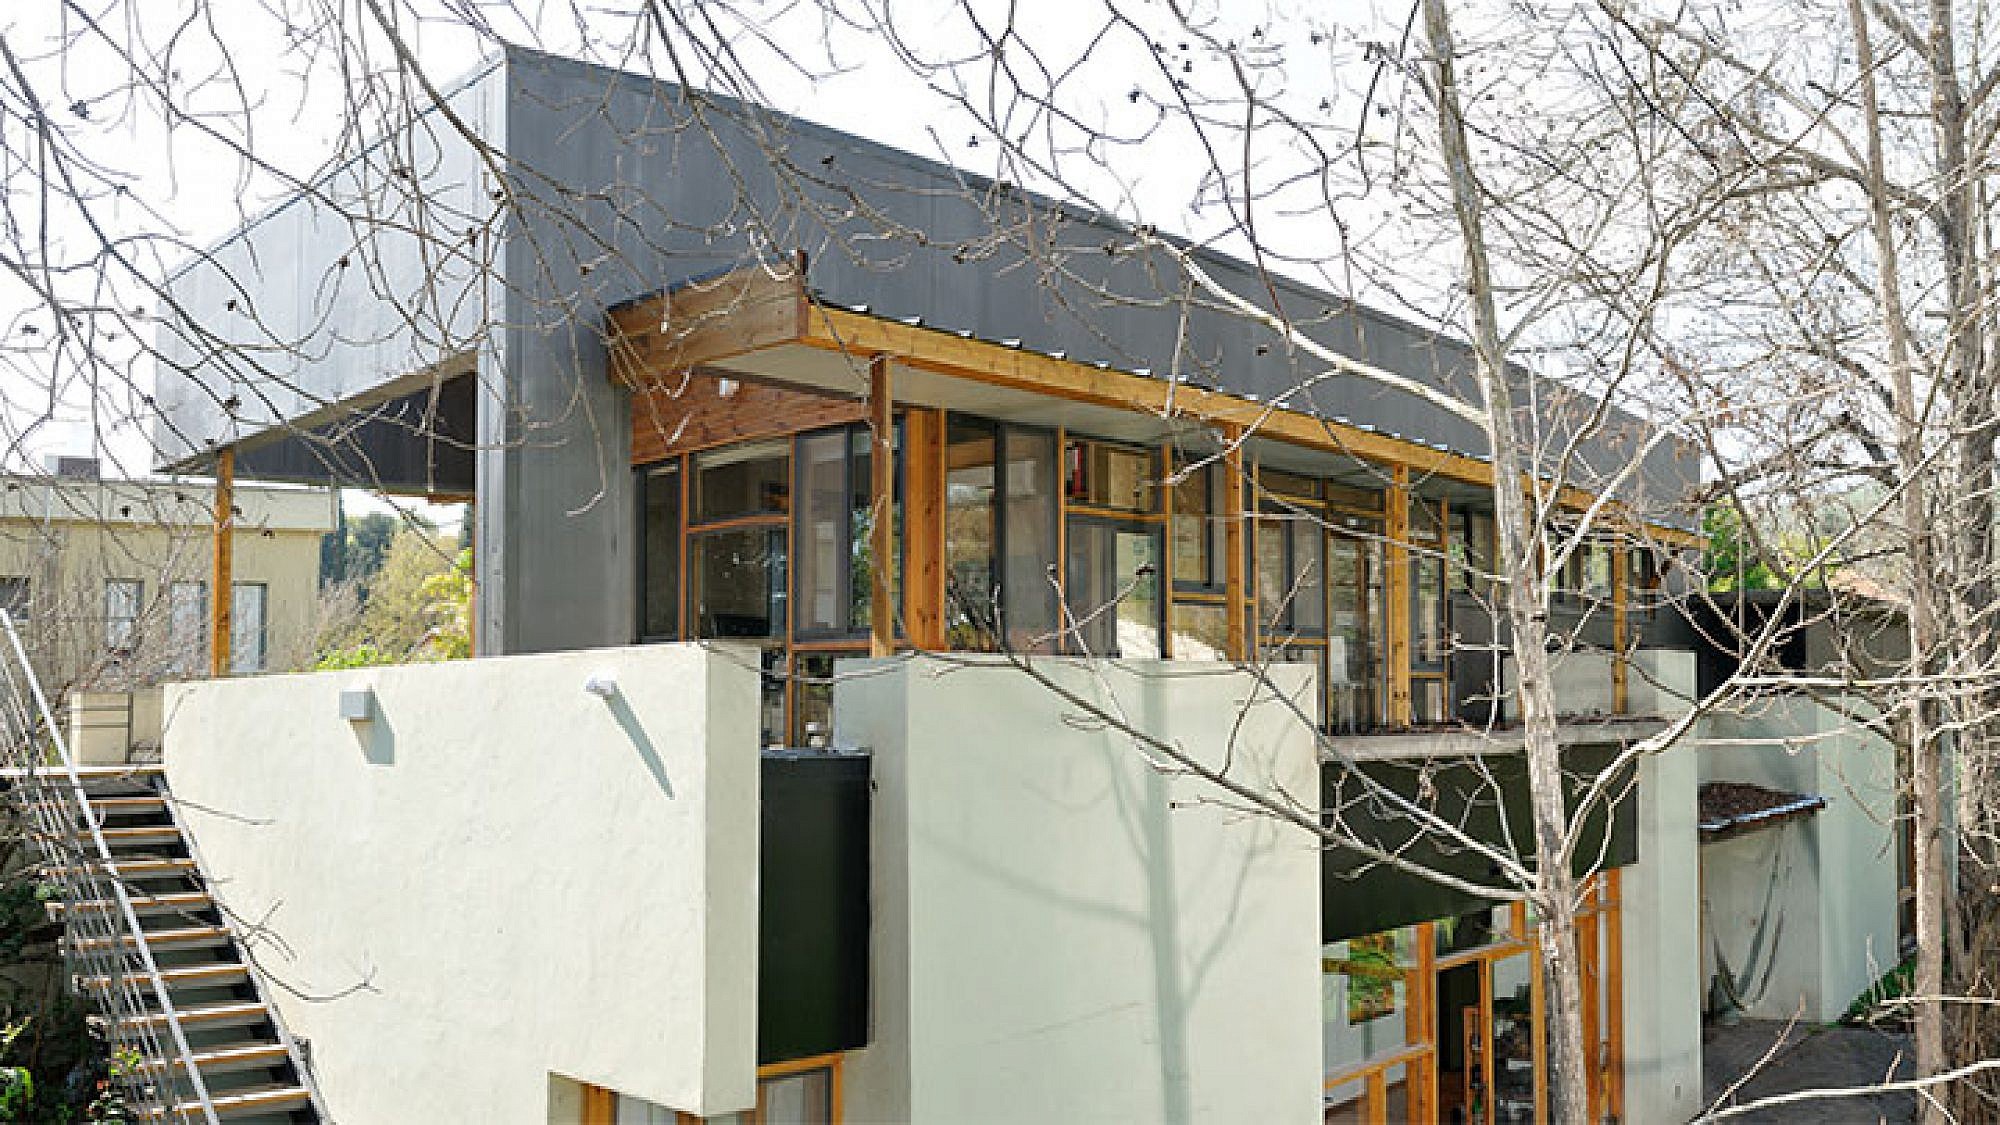 משרד כאן אדריכלים ביקנעם המושבה שהוקם על גג ביתו הפרטי של גולדשטיין. צילום: יגאל פרדו